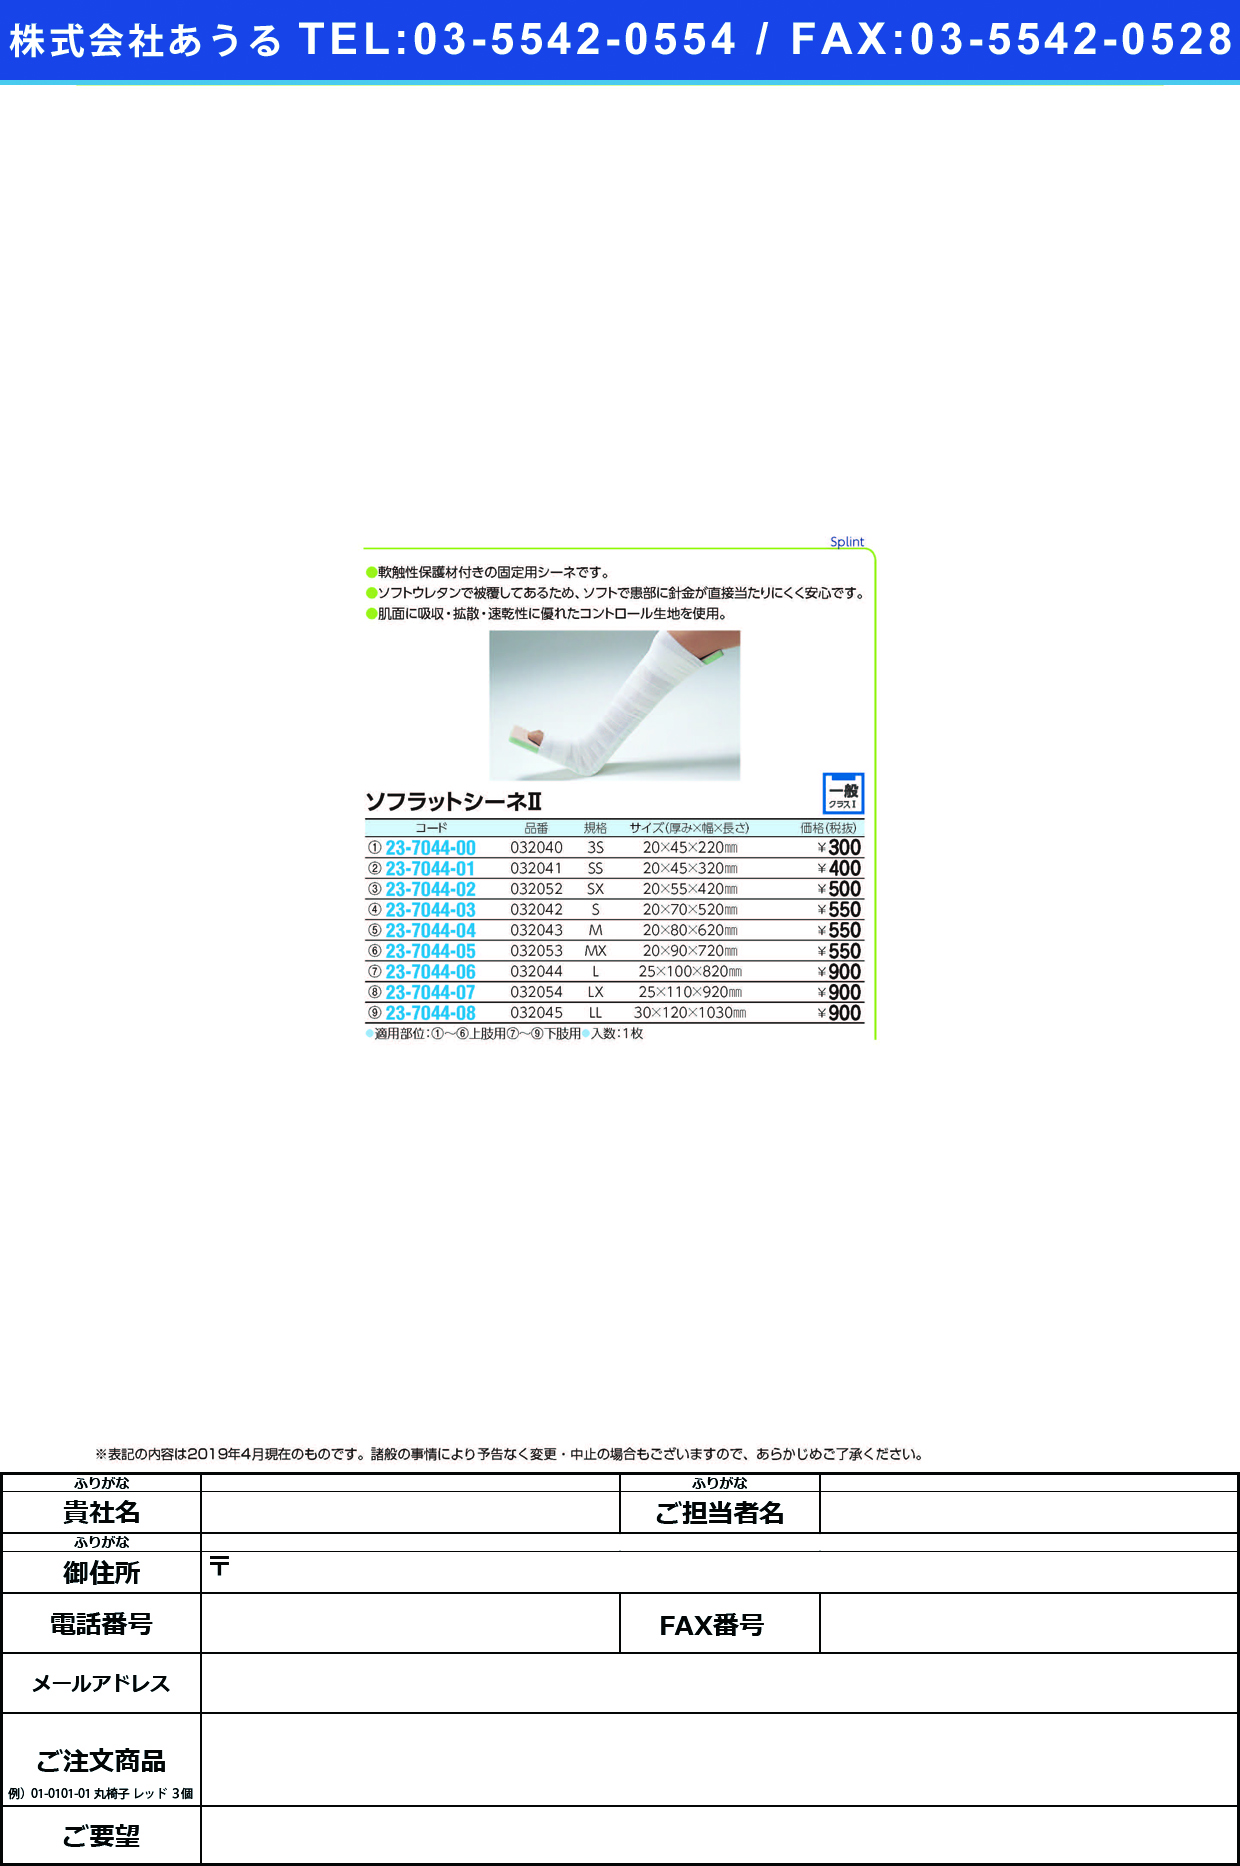 (23-7044-06)ソフラットシーネ?（Ｌ） 032044 ｿﾌﾗｯﾄｼｰﾈ2(L)(竹虎)【1枚単位】【2019年カタログ商品】